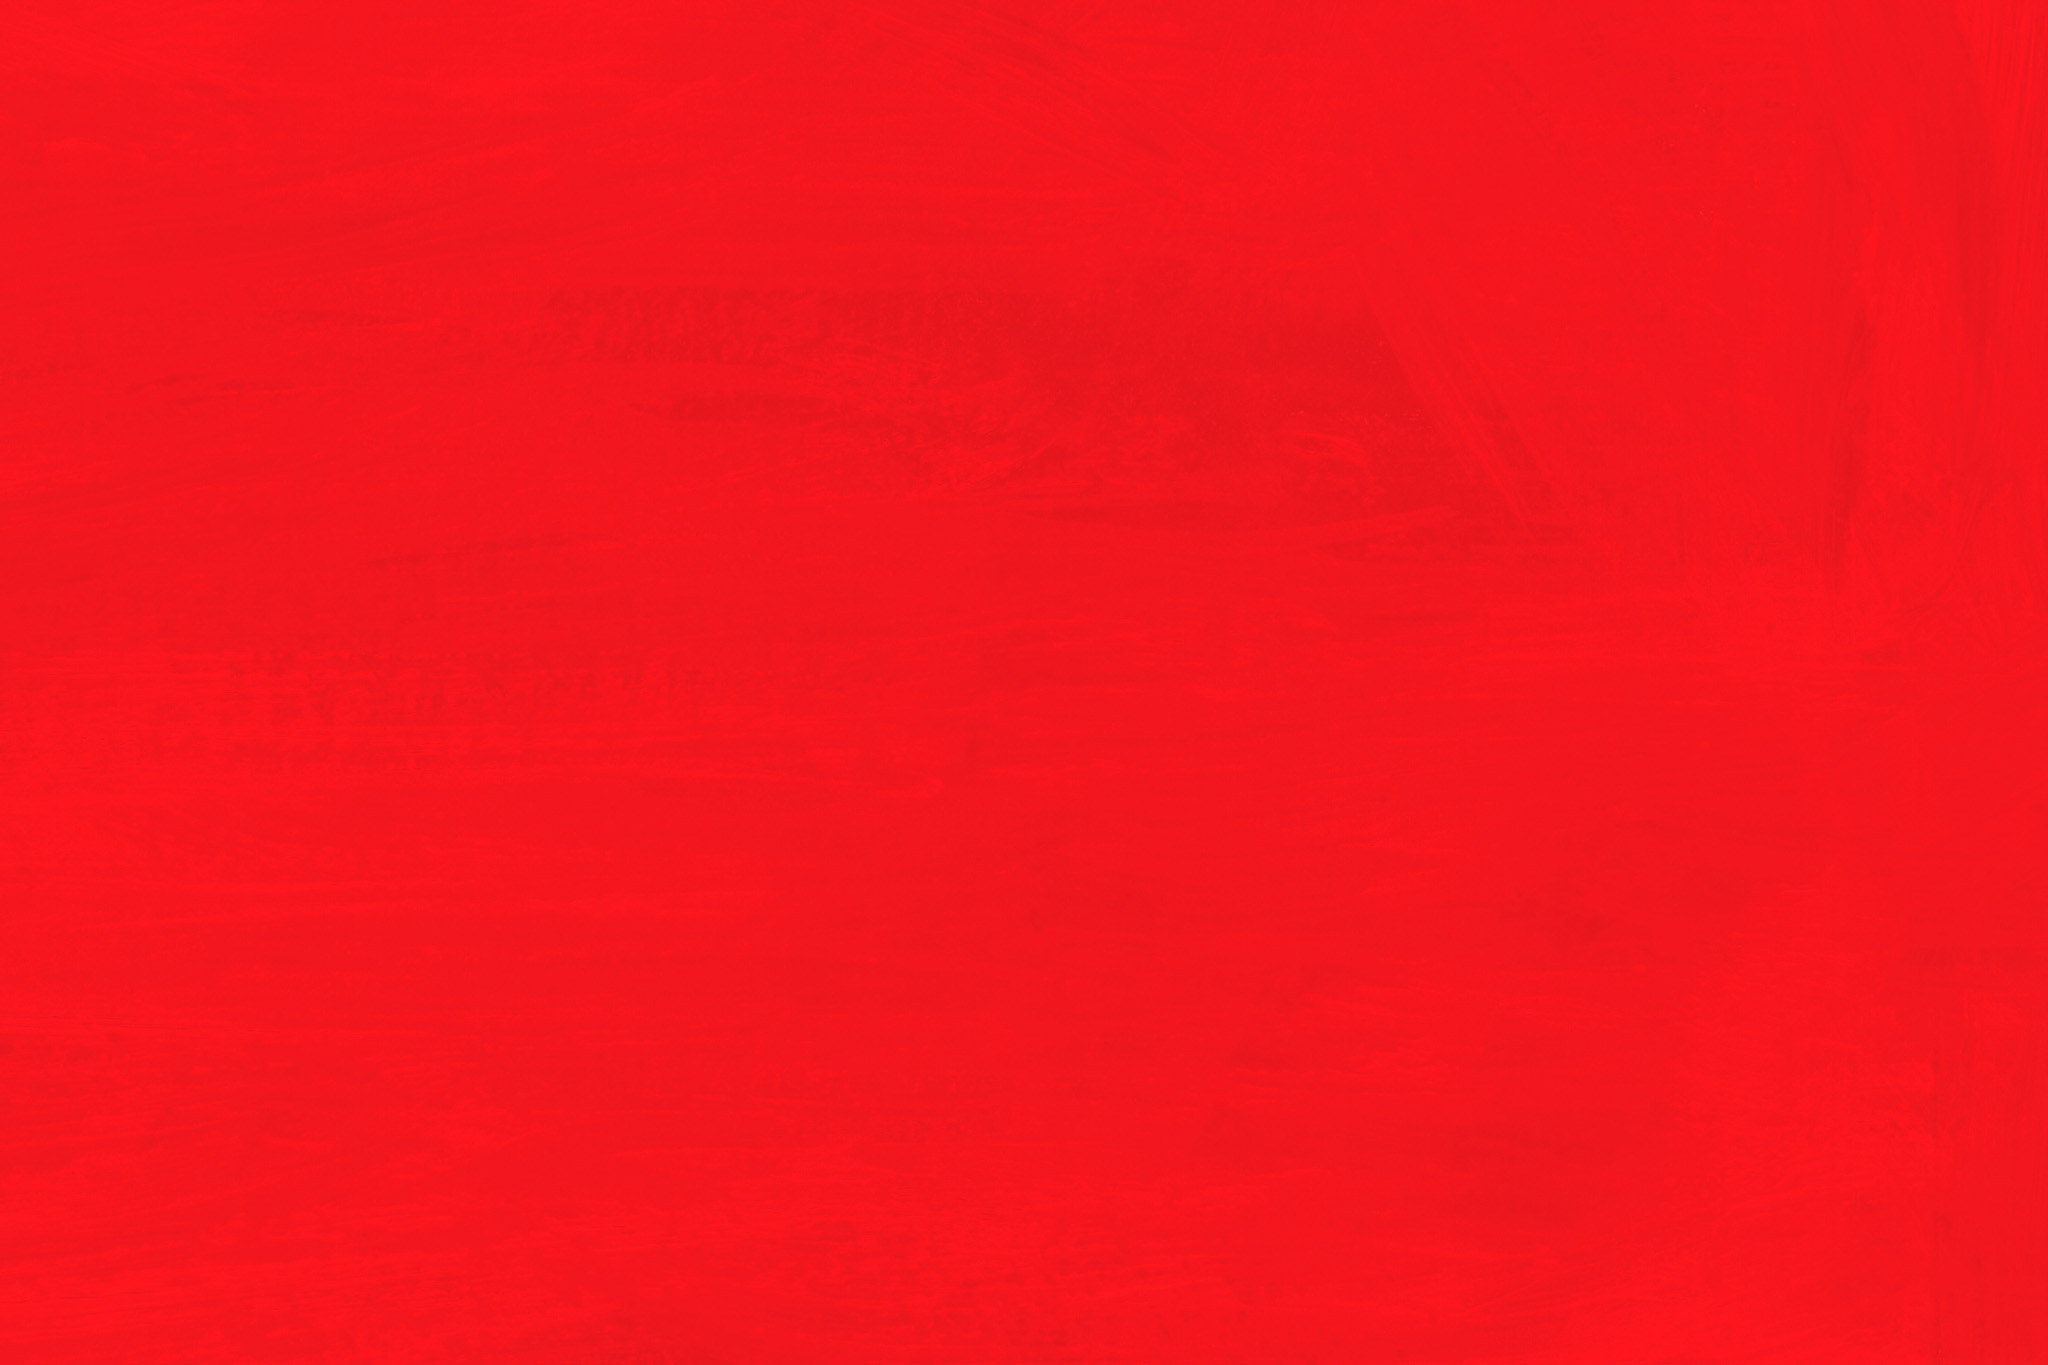 クールな赤色の無地の壁紙 の画像素材を無料ダウンロード 1 フリー素材 Beiz Images